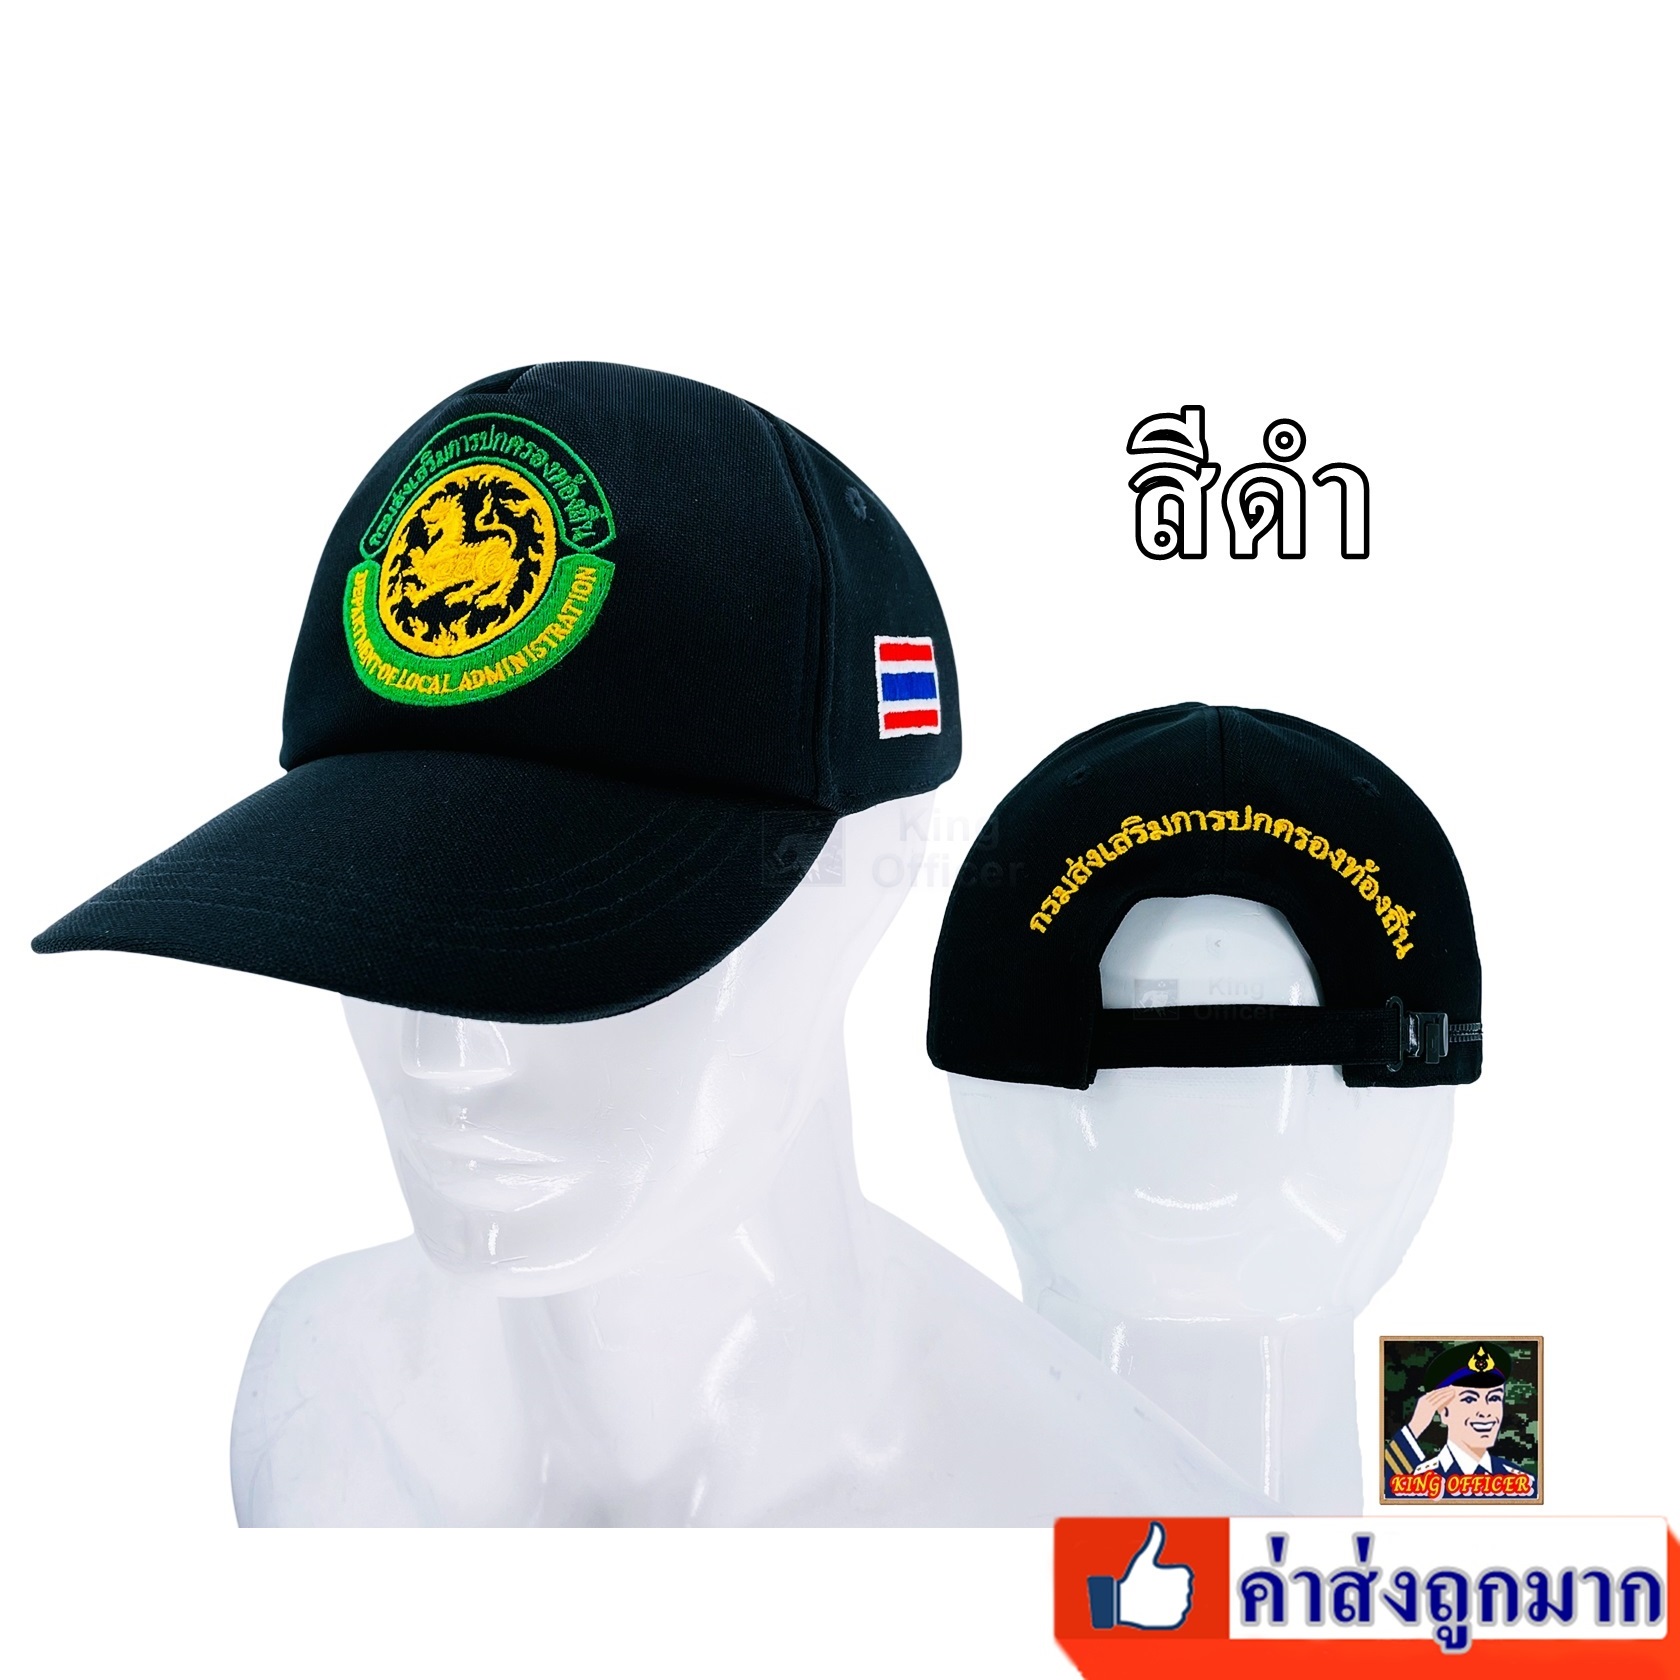 หมวก กรมส่งเสริมการปกครองท้องถิ่น สถ. สีดำ  ปกครองท้องถิ่น อปท หมวกท้องถิ่น  เทศบาล  อบต. ธงชาติไทย บุแผ่นฟองน้ำ